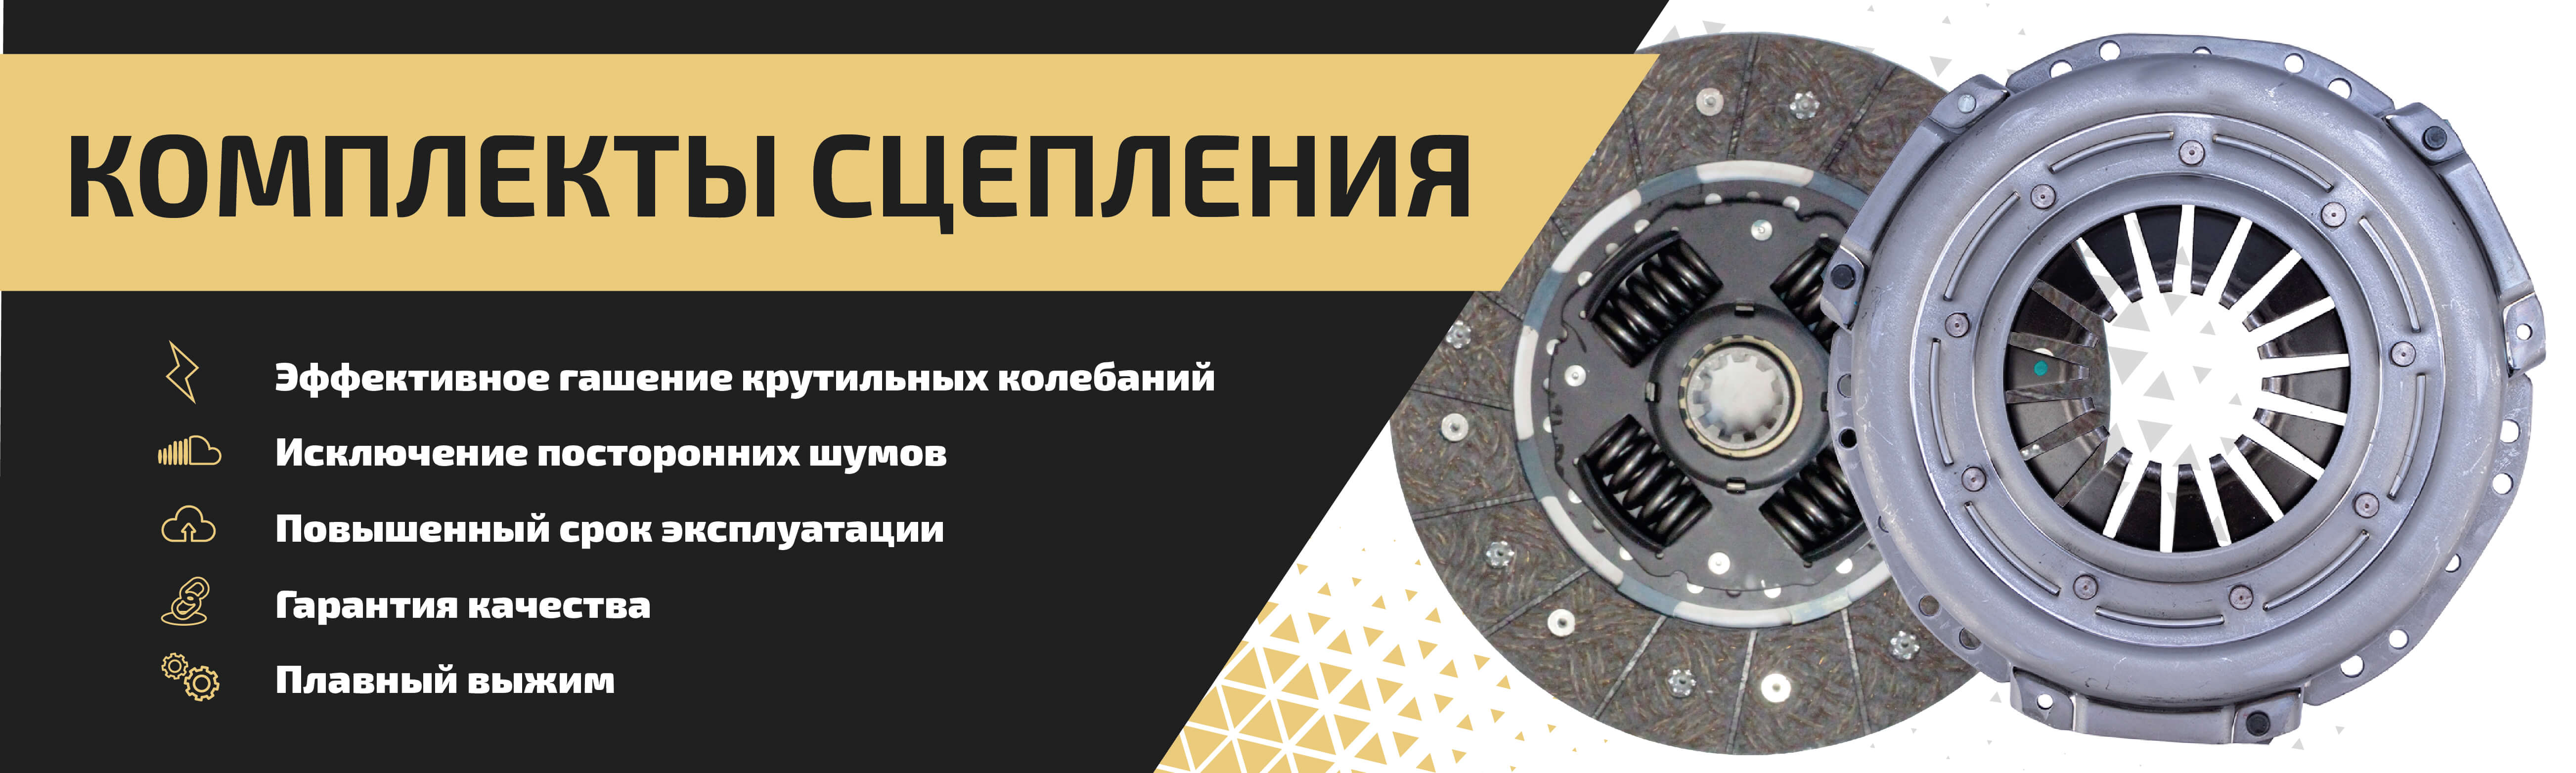 Сцепление — Купить для ГАЗ и УАЗ, цены в Metalpart.ru